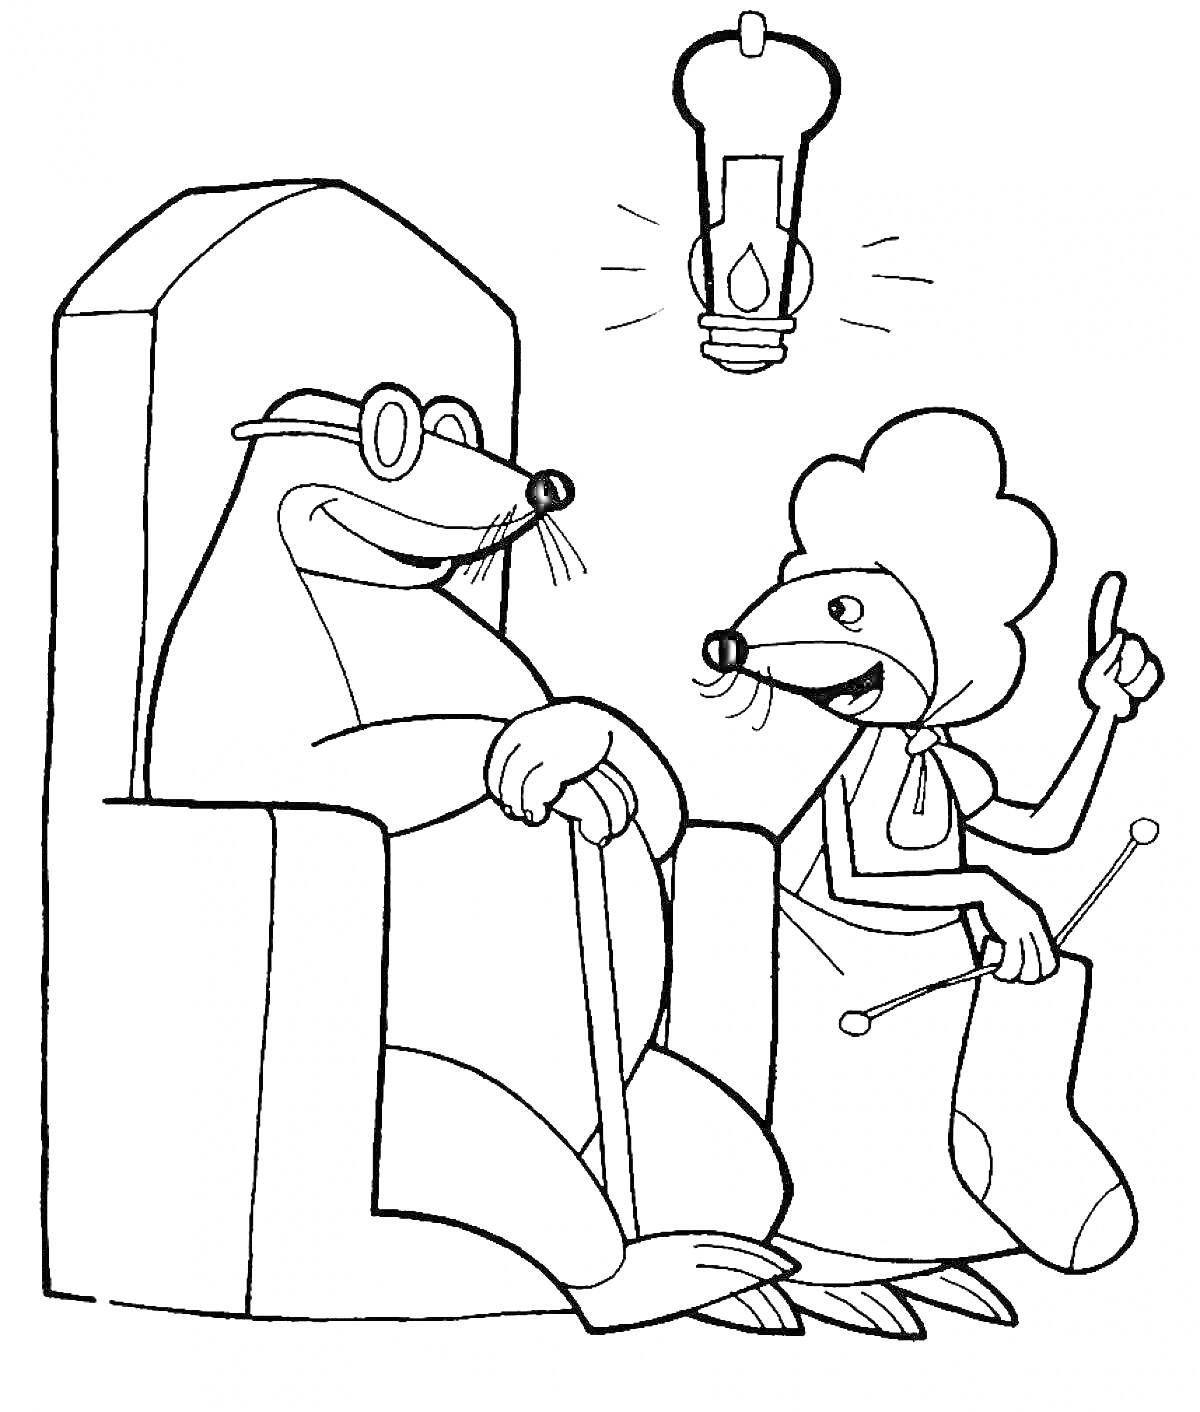 Раскраска Крот на кресле с палкой и мышь с вязальными спицами под лампочкой